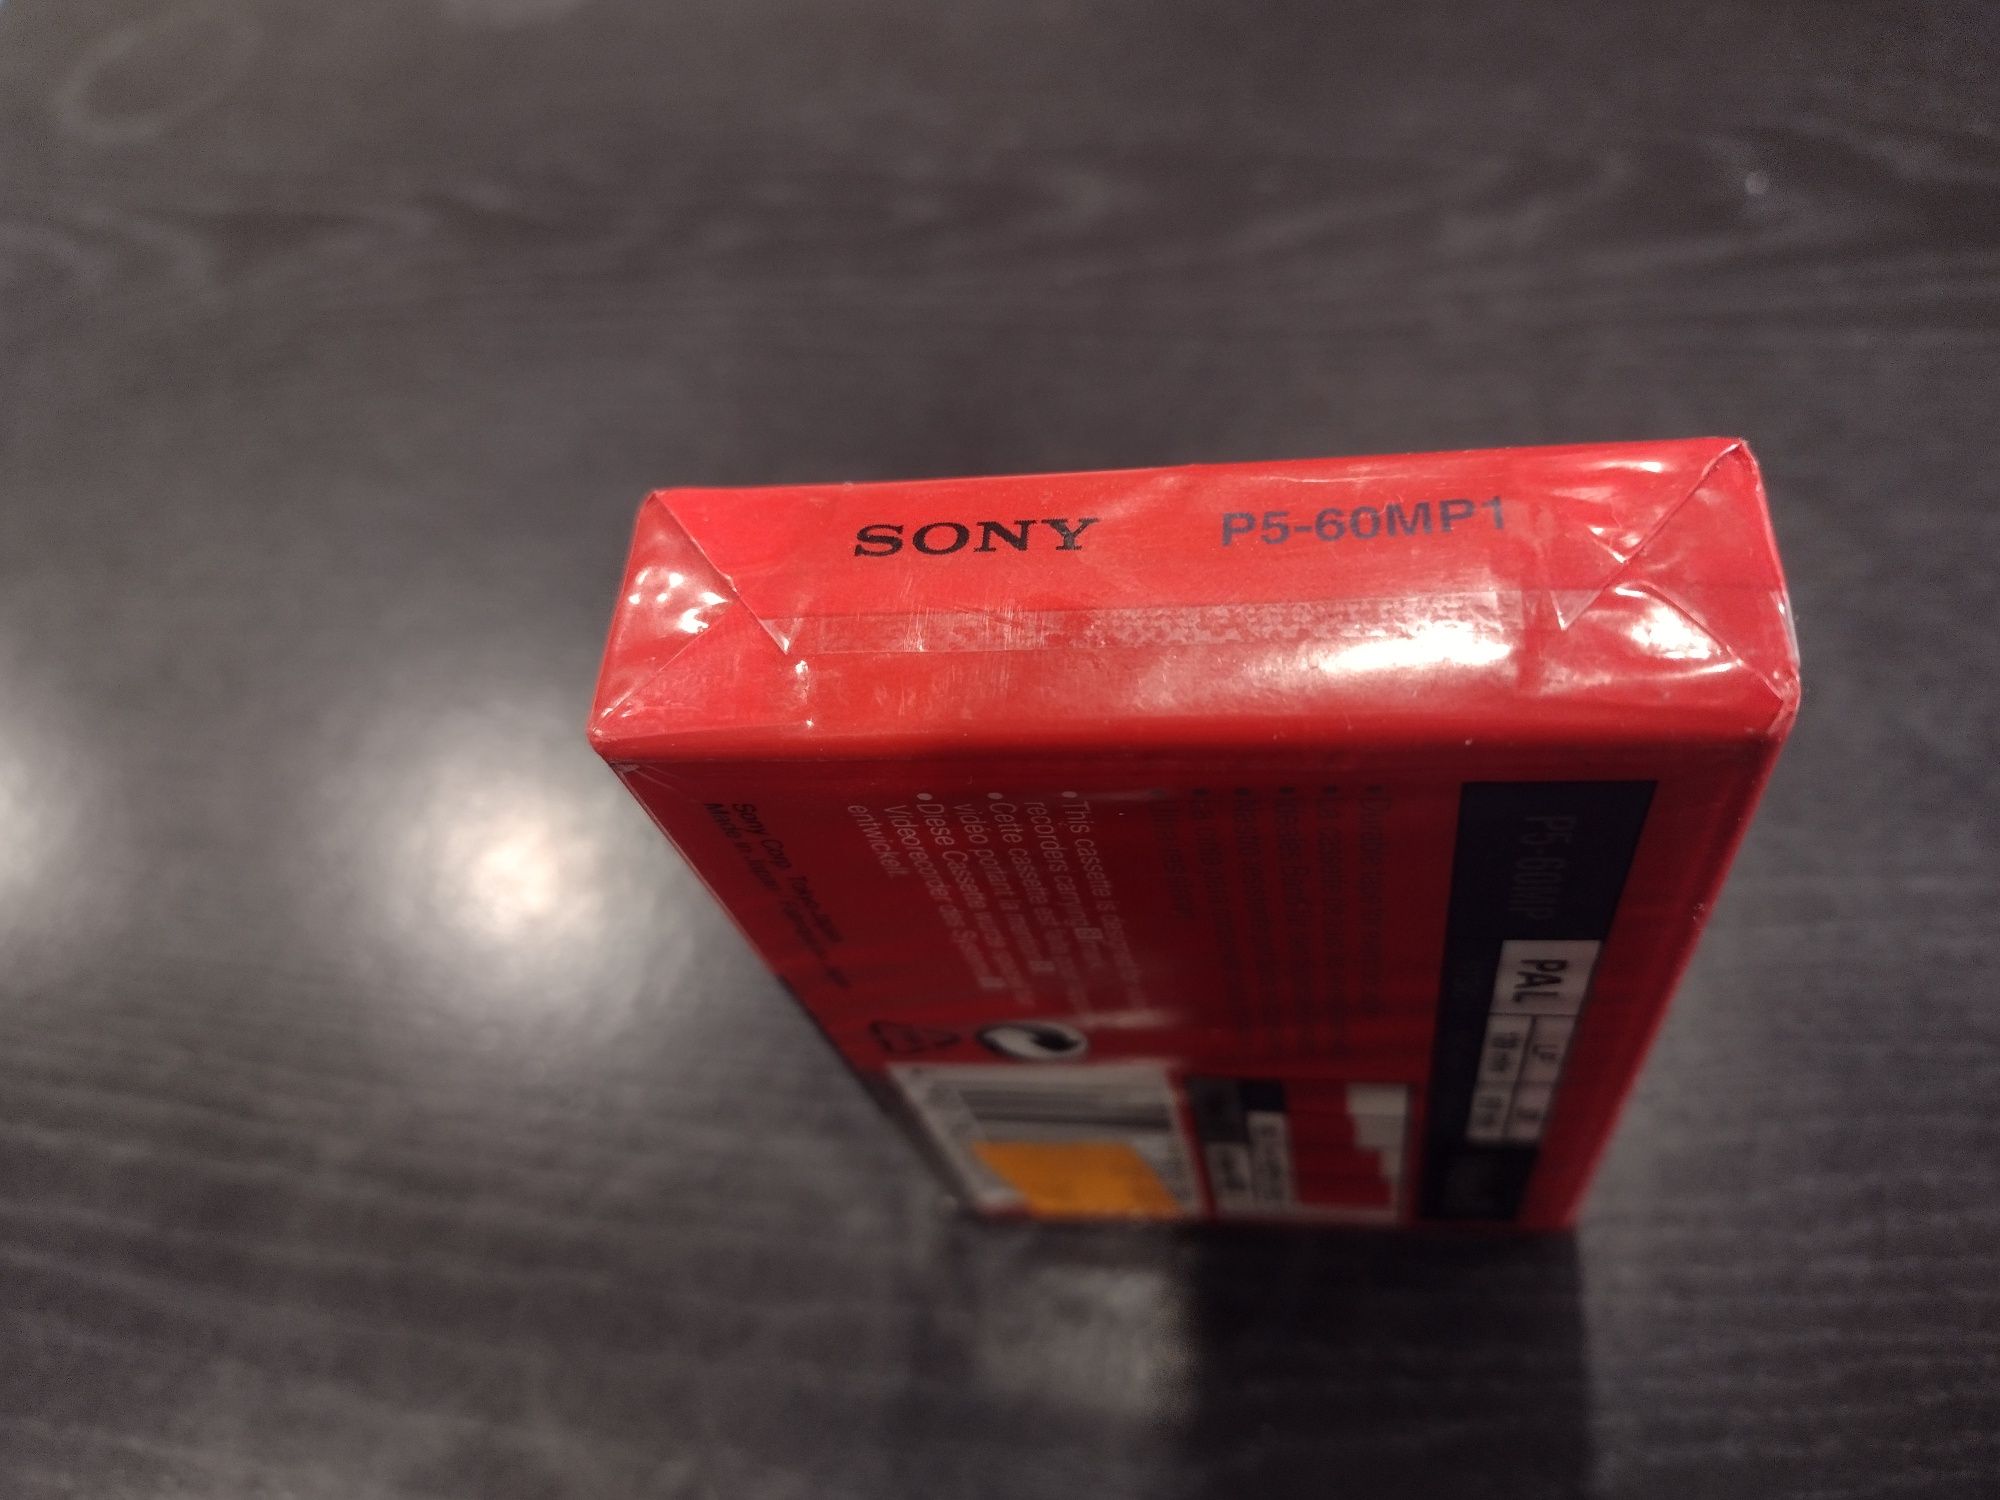 Kaseta VHS Sony 8 mm. Okazja